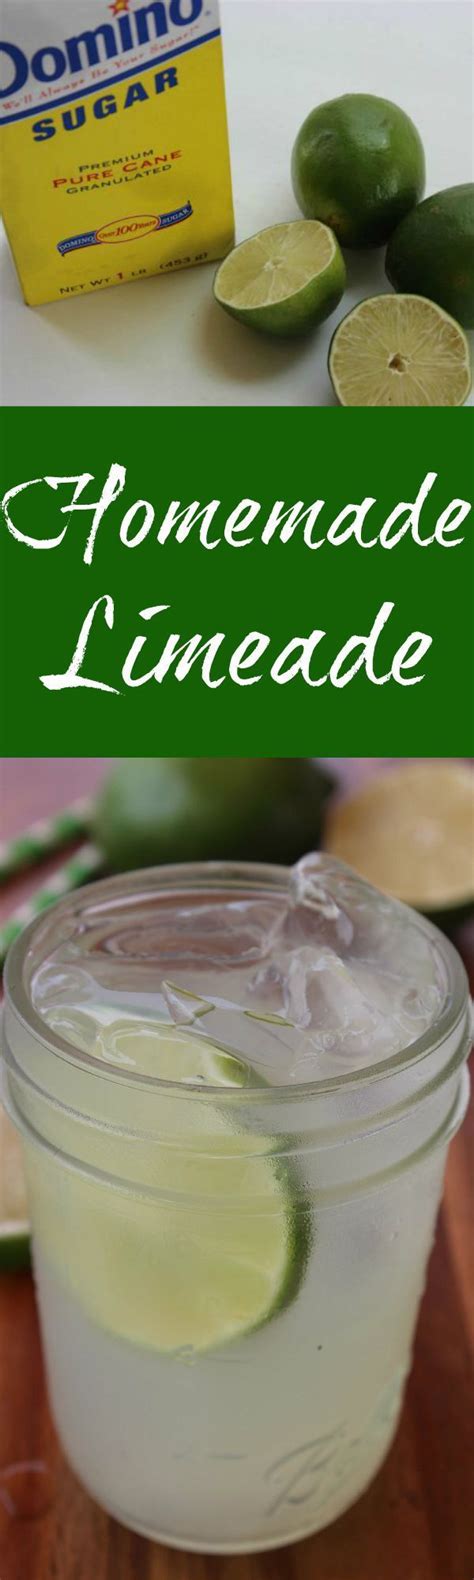 Homemade Limeade Homemade Limeade Has All The Crisp Cool Refreshment